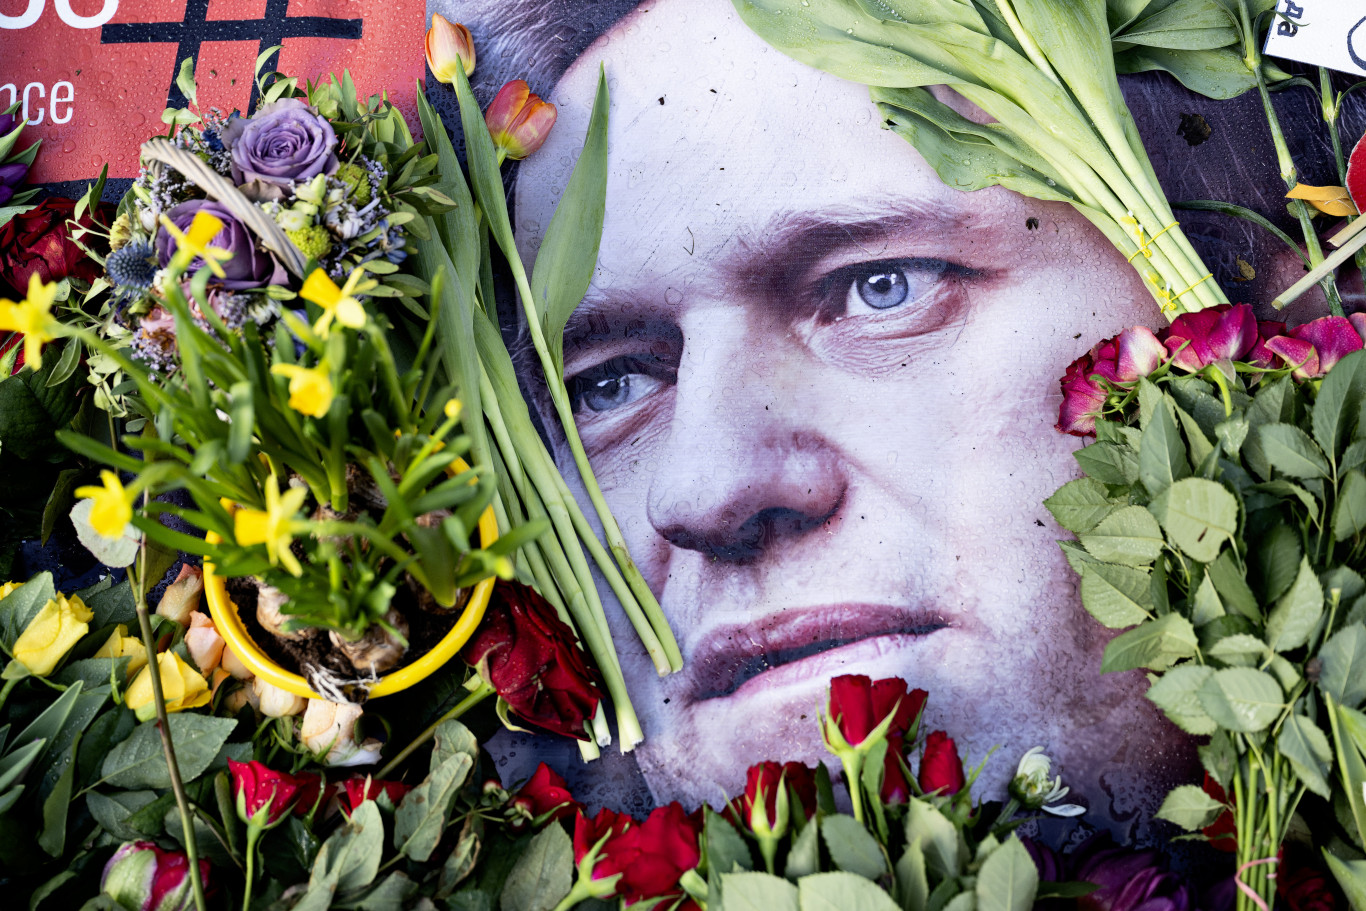 Rejtegetik Navalnij holttestét az orosz hatóságok